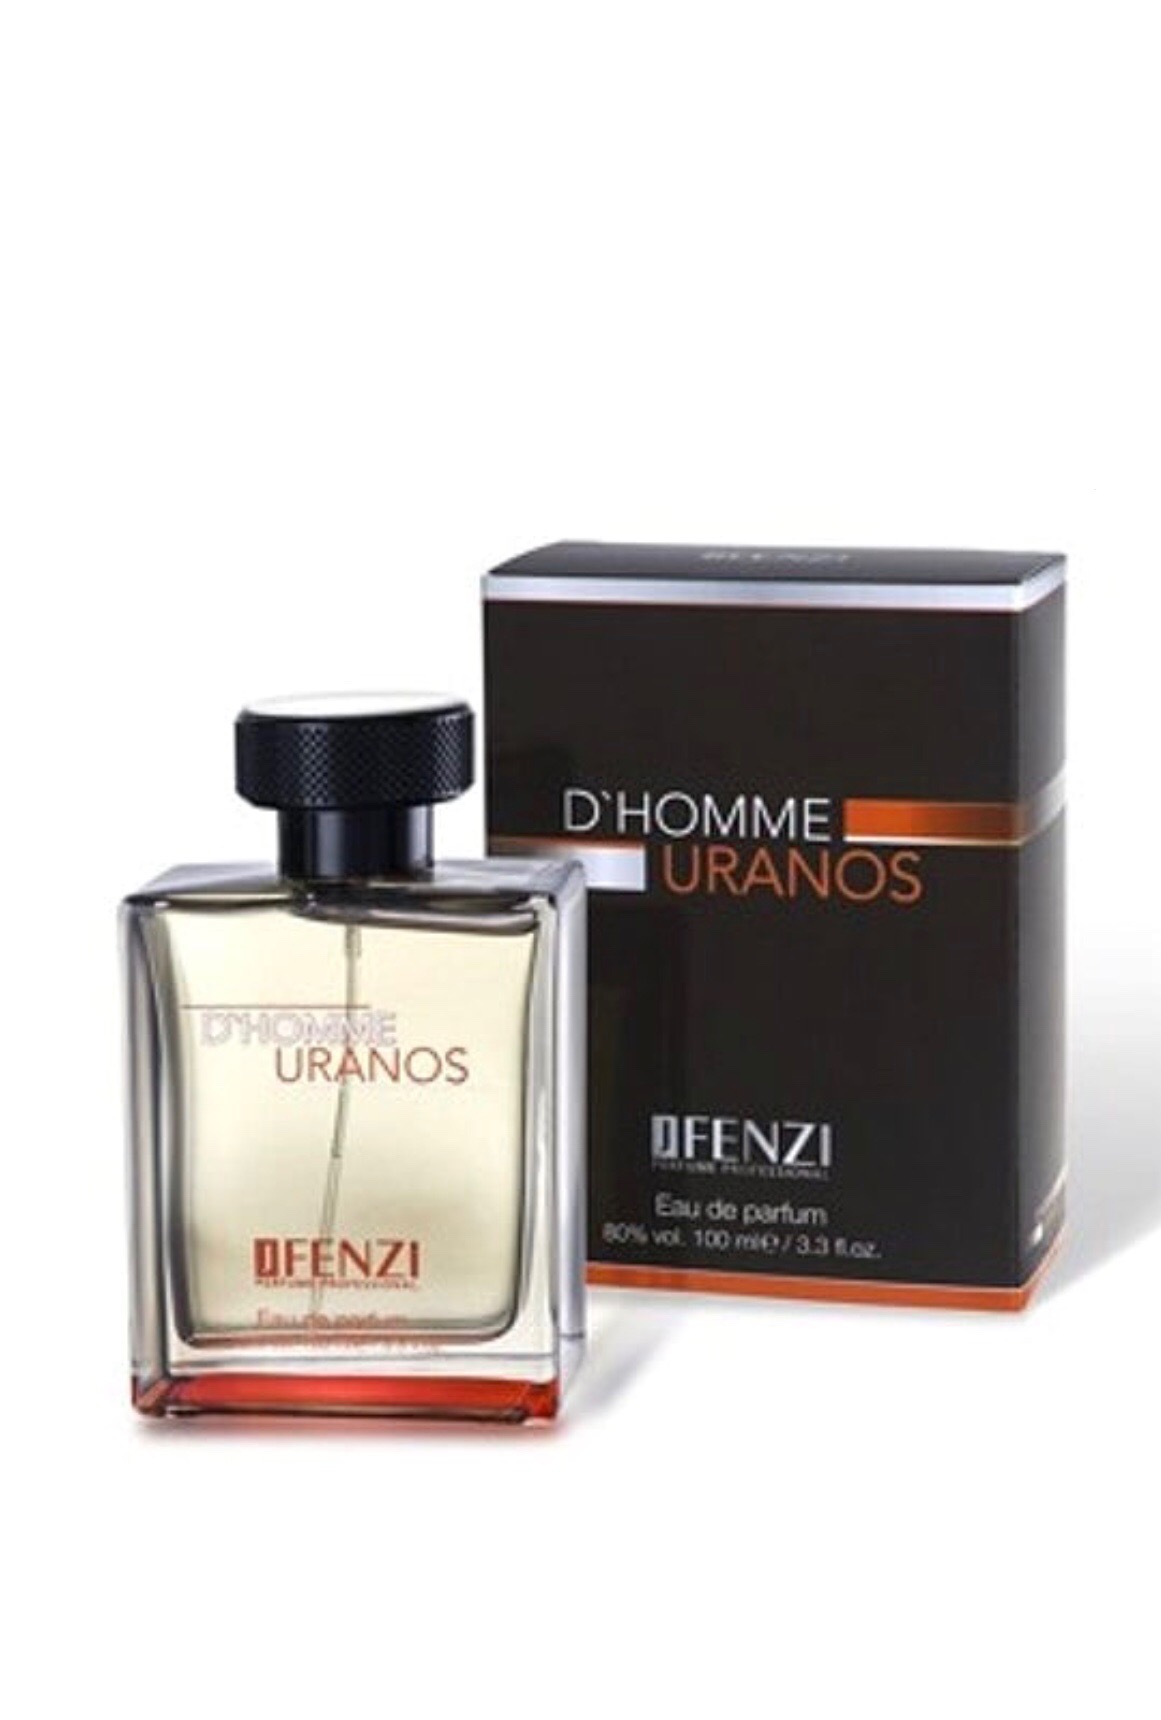 D’homme Uranos eau de parfum for men 100ml By Jfenzi – ANA